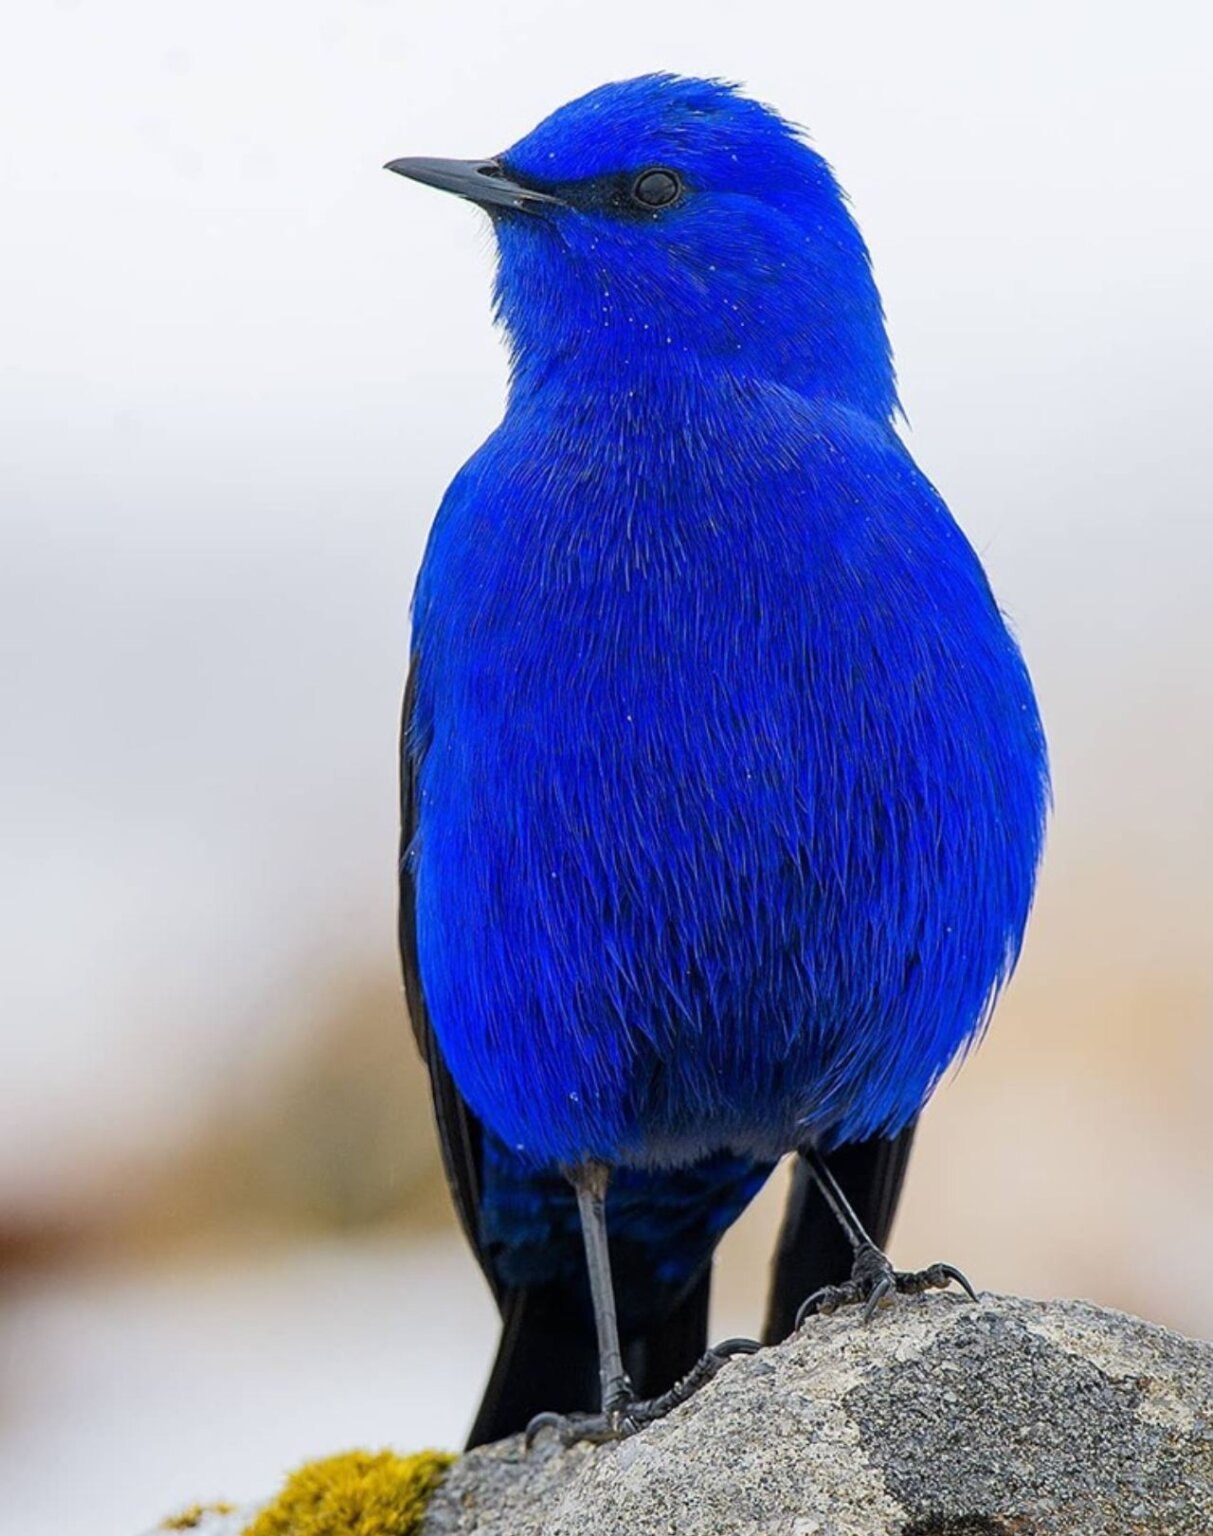 O bird. Лазоревая птица Грандала. Ультрамариновый овсянковый Кардинал. Стеллерова черноголовая голубая Сойка. Синяя птица голубая Грандала.